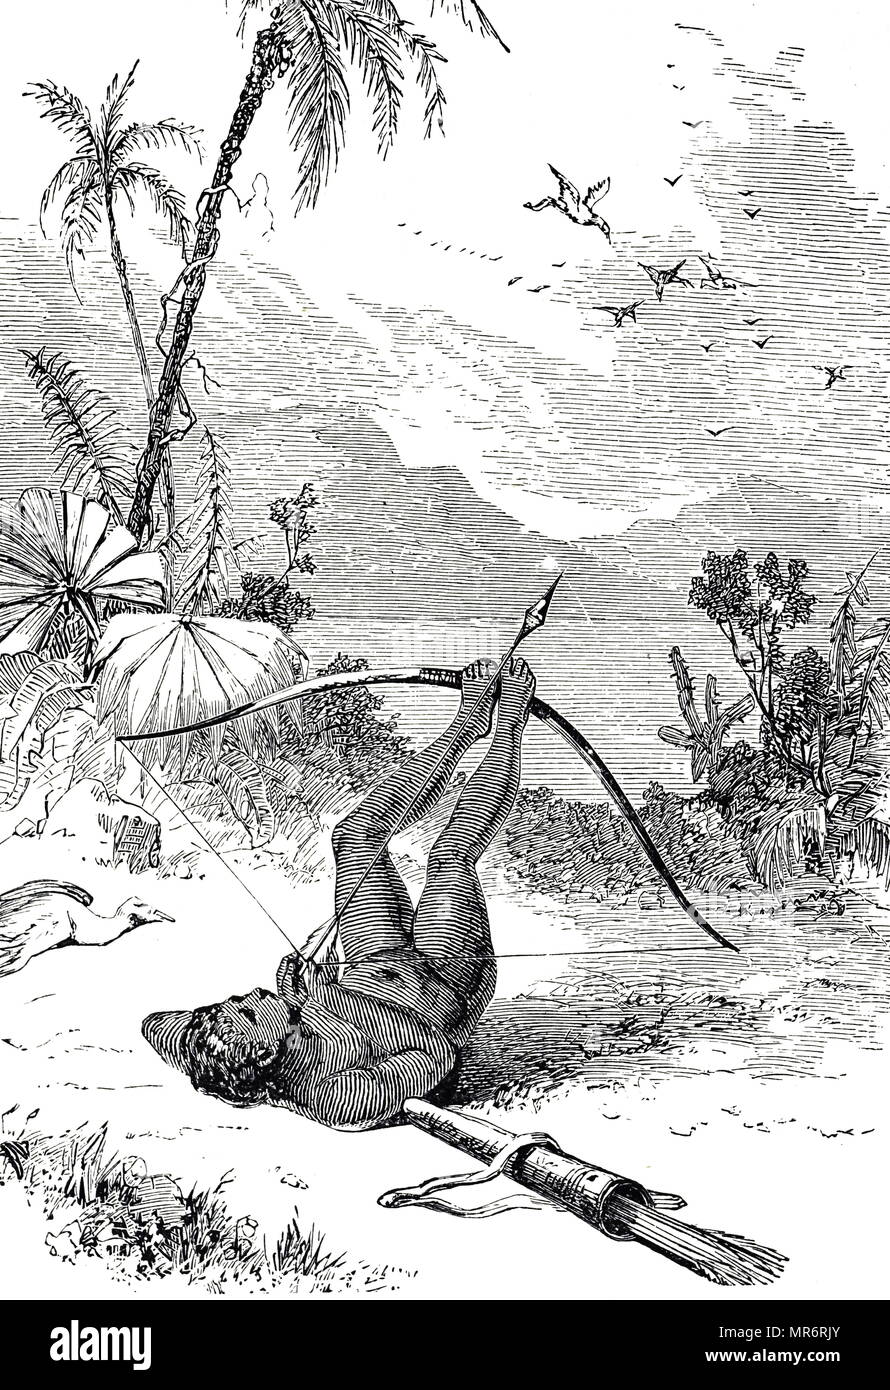 Incisione raffigurante il South American Indian procedimento di utilizzo di un arco e frecce di caccia agli uccelli. Datata del XIX secolo Foto Stock